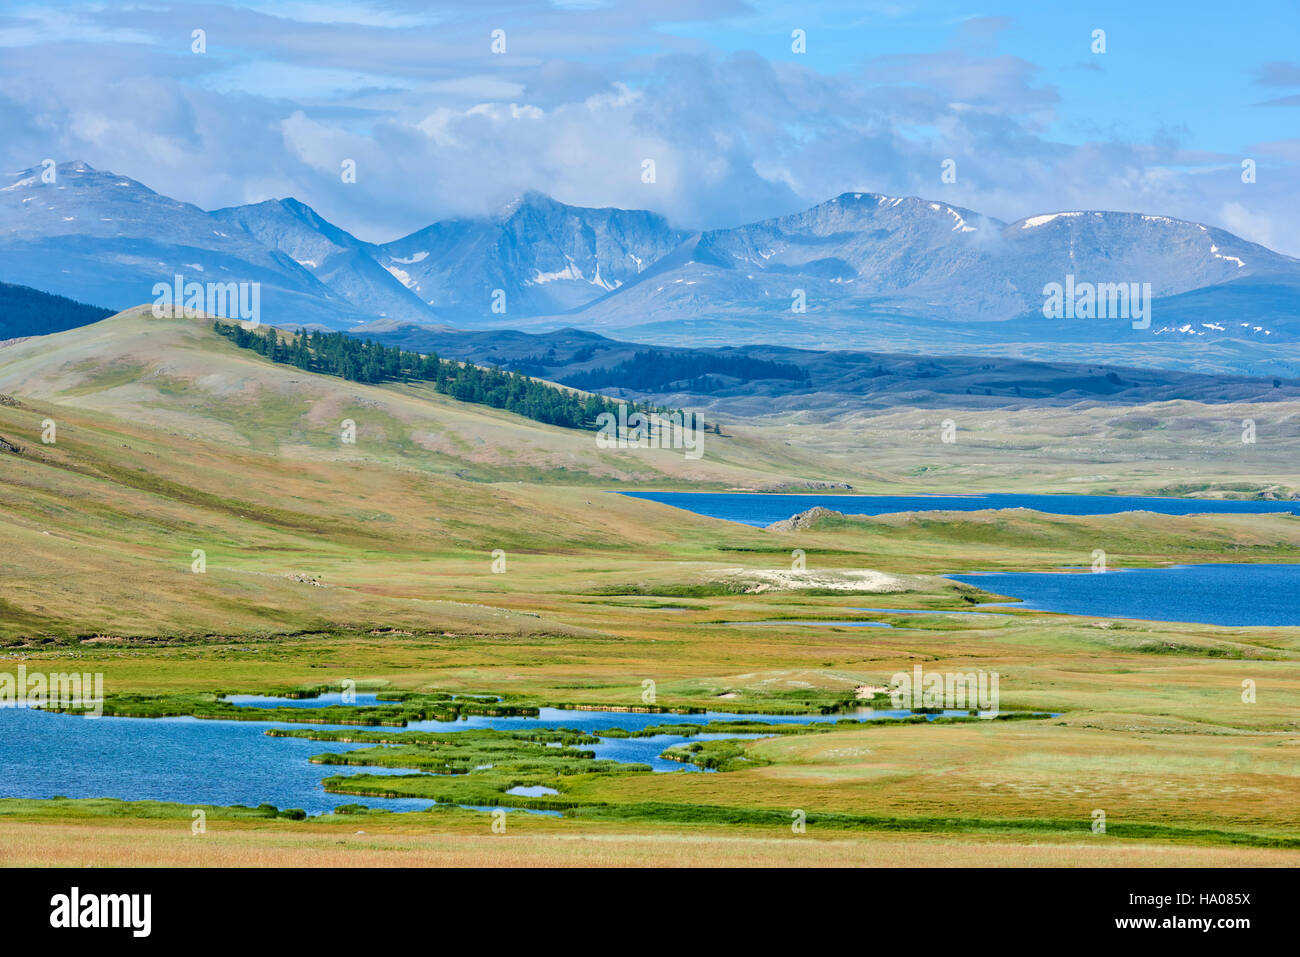 La Mongolie, Bayan-Ulgii province, l'ouest de la Mongolie, parc national de Tavan Bogd, le 5 plus haut sommet de la montagne de l'Altaï, Dayan Nuur lake Banque D'Images